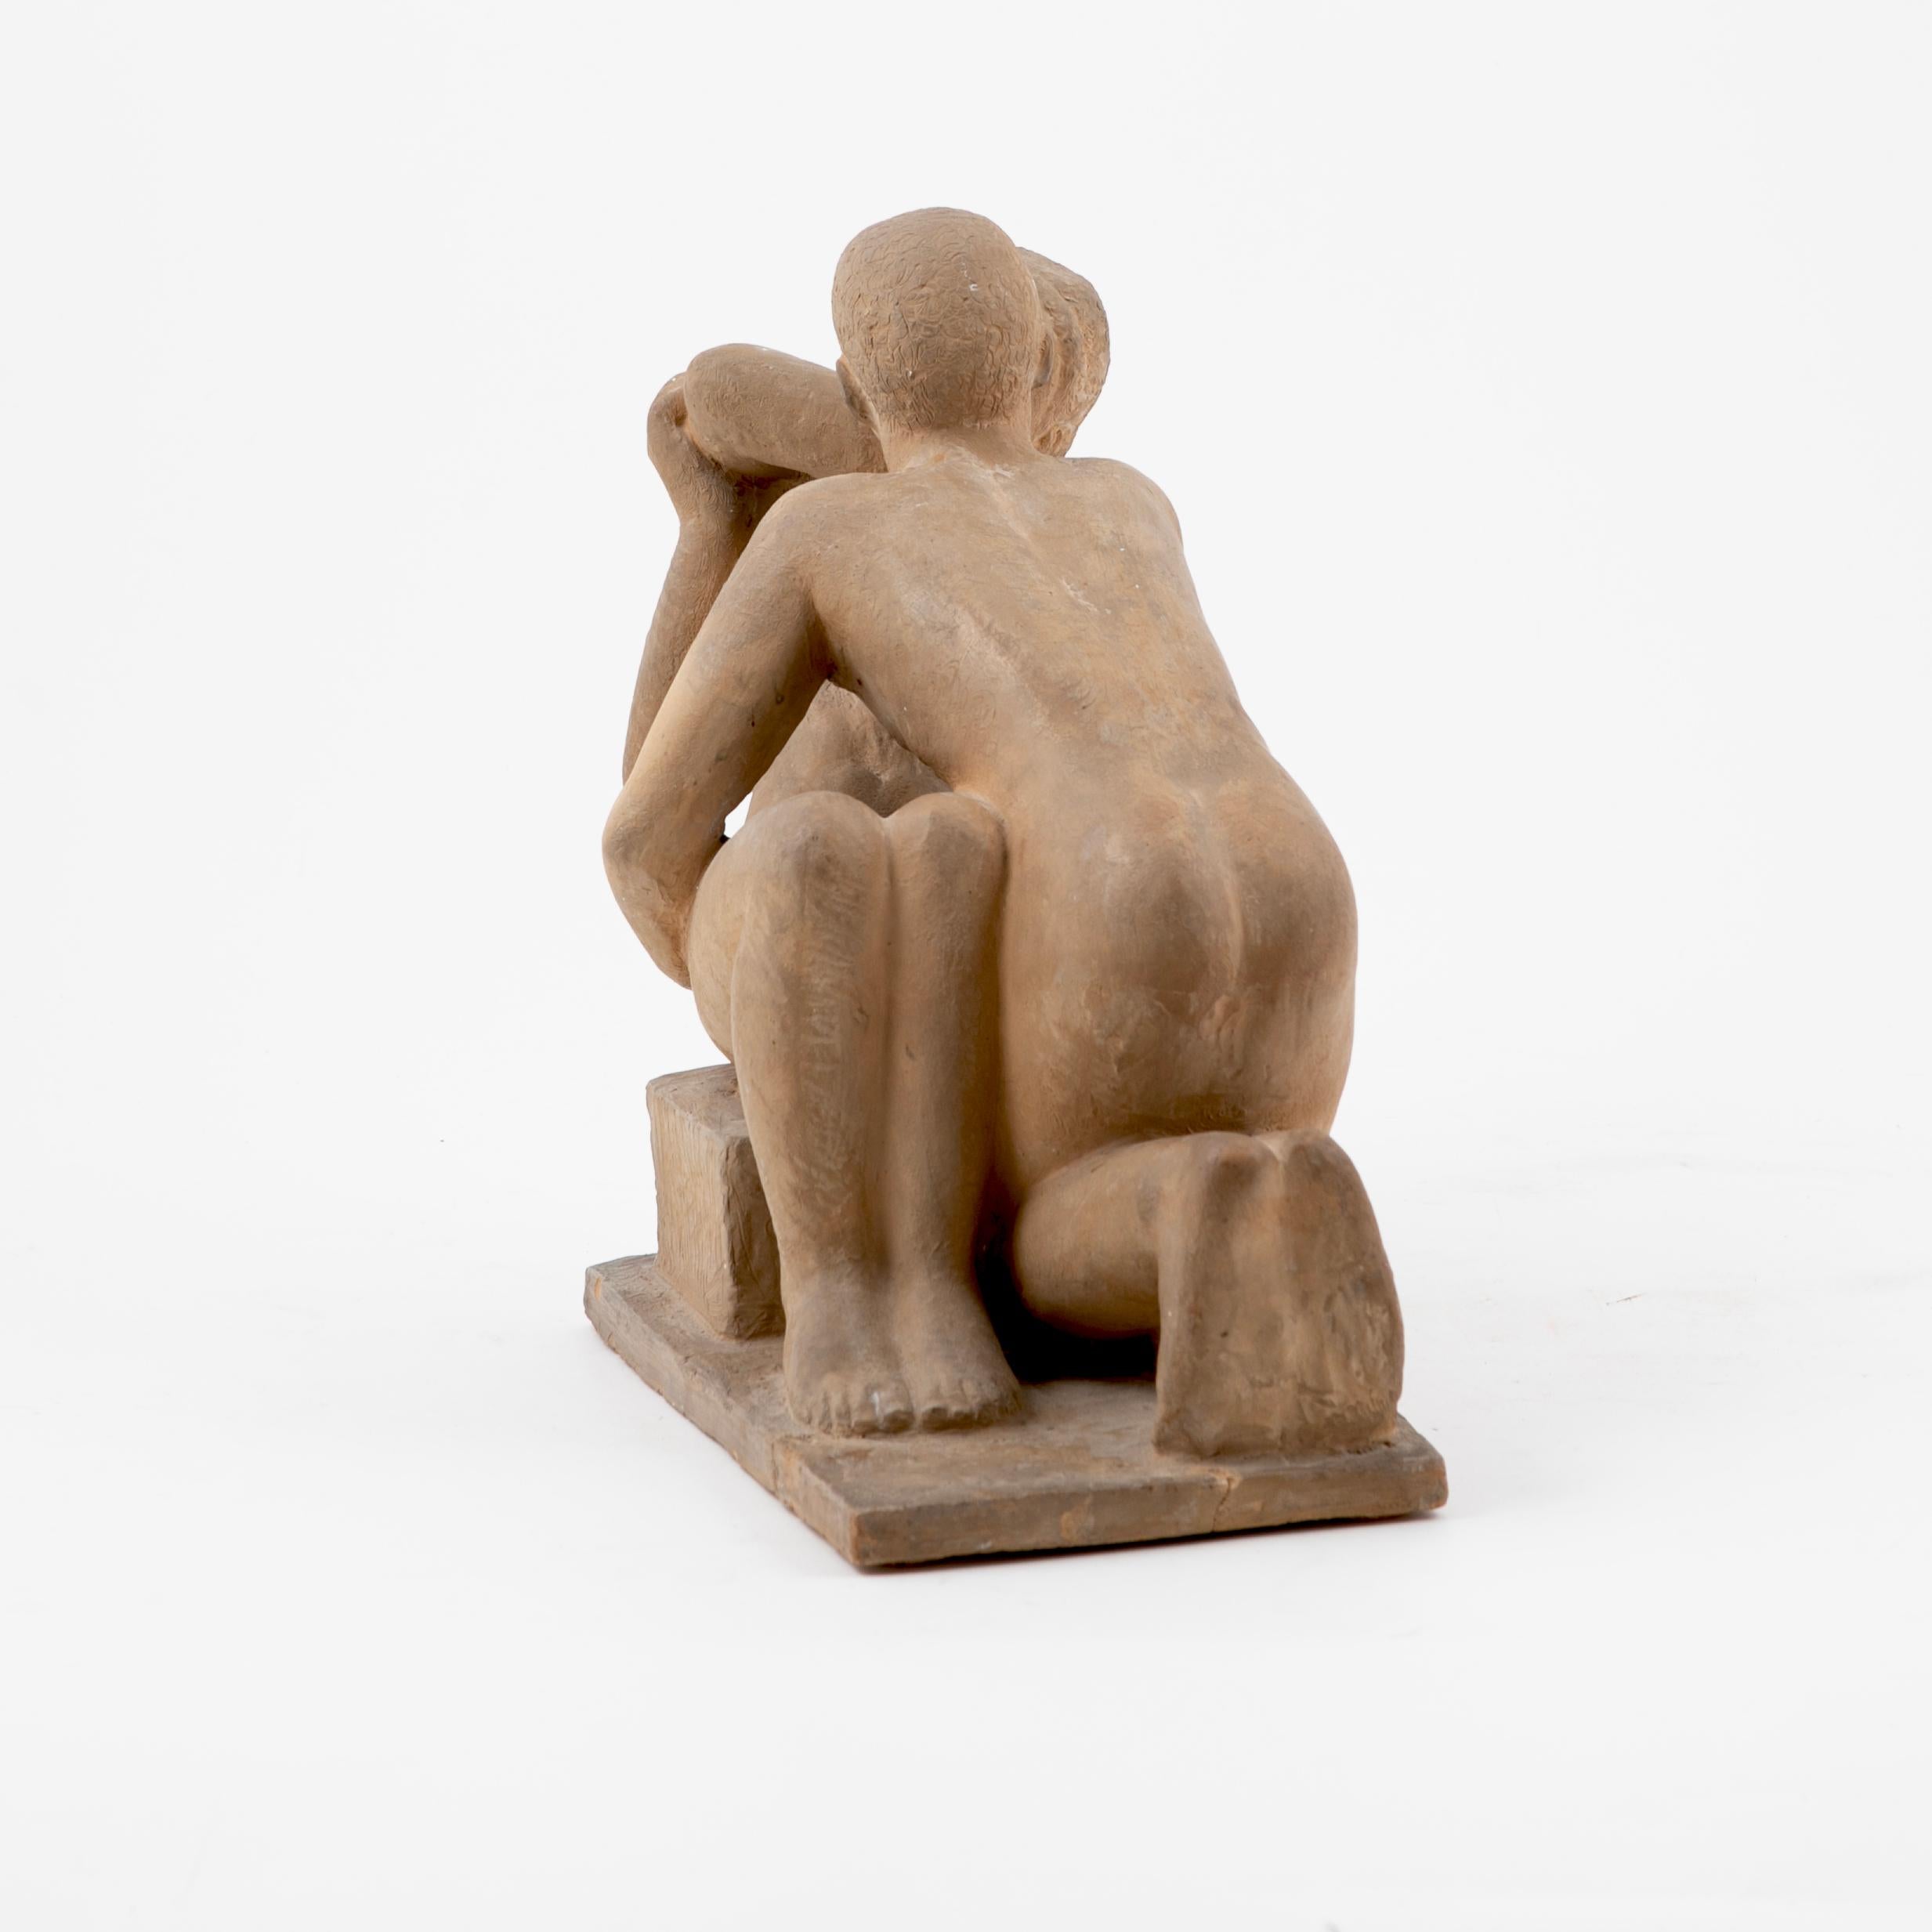 Sculpture en argile cuite représentant un couple érotique.
Intitulé : No 1.
Signé Gerhard Henning, 1927

NB : Le socle a été réparé, la sculpture elle-même est en parfait état.